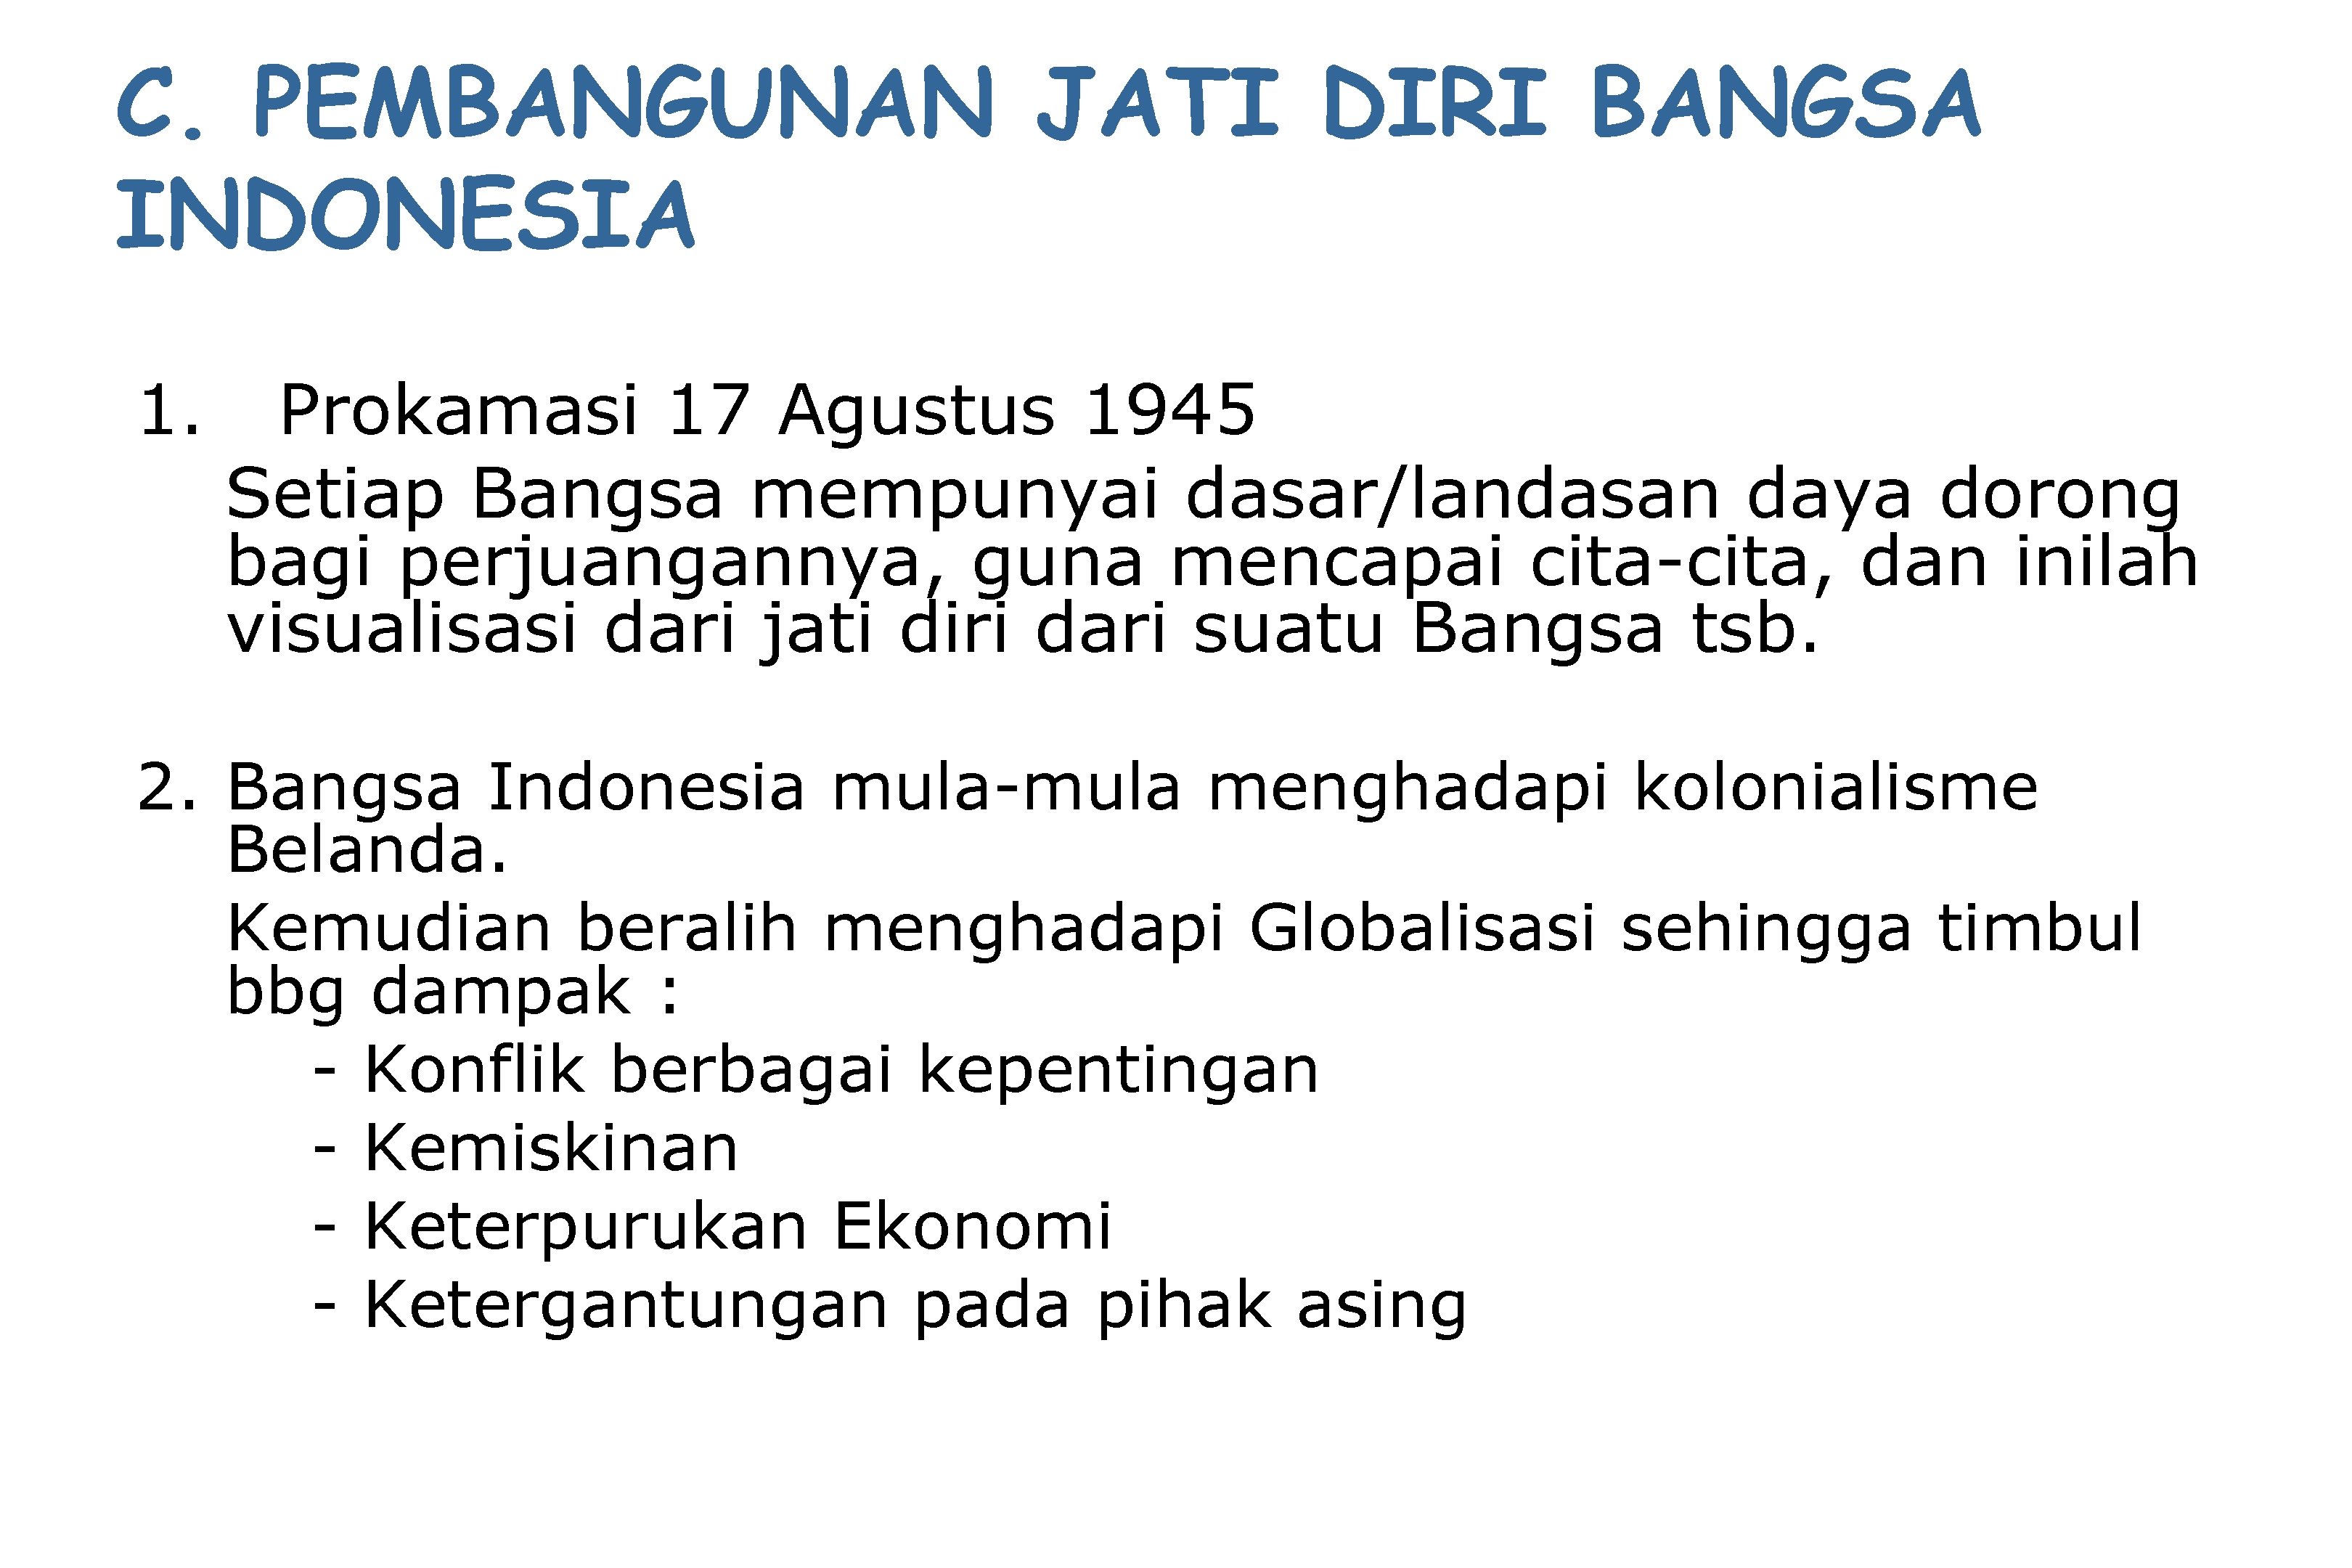 C. PEMBANGUNAN JATI DIRI BANGSA INDONESIA 1. Prokamasi 17 Agustus 1945 Setiap Bangsa mempunyai